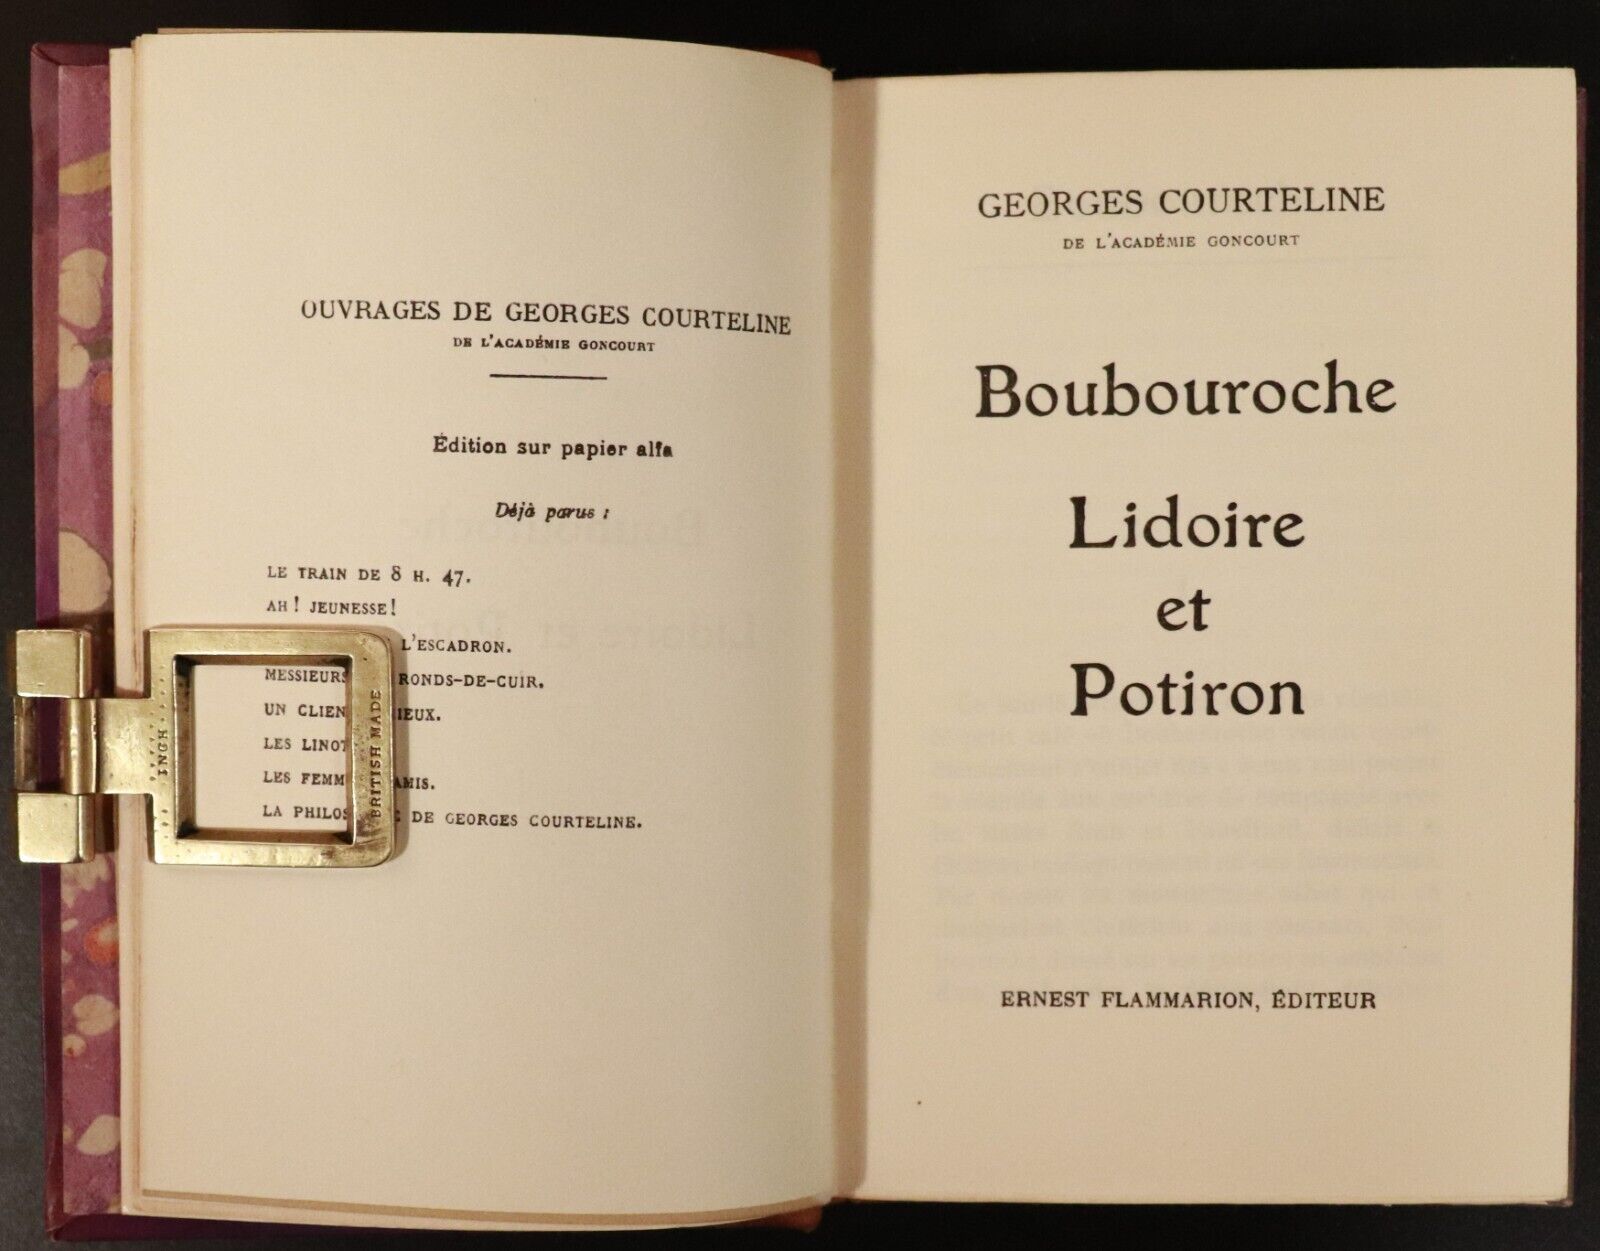 1929 11vol Ouvrages De Georges Courteline Antique Fiction Books Fine Binding